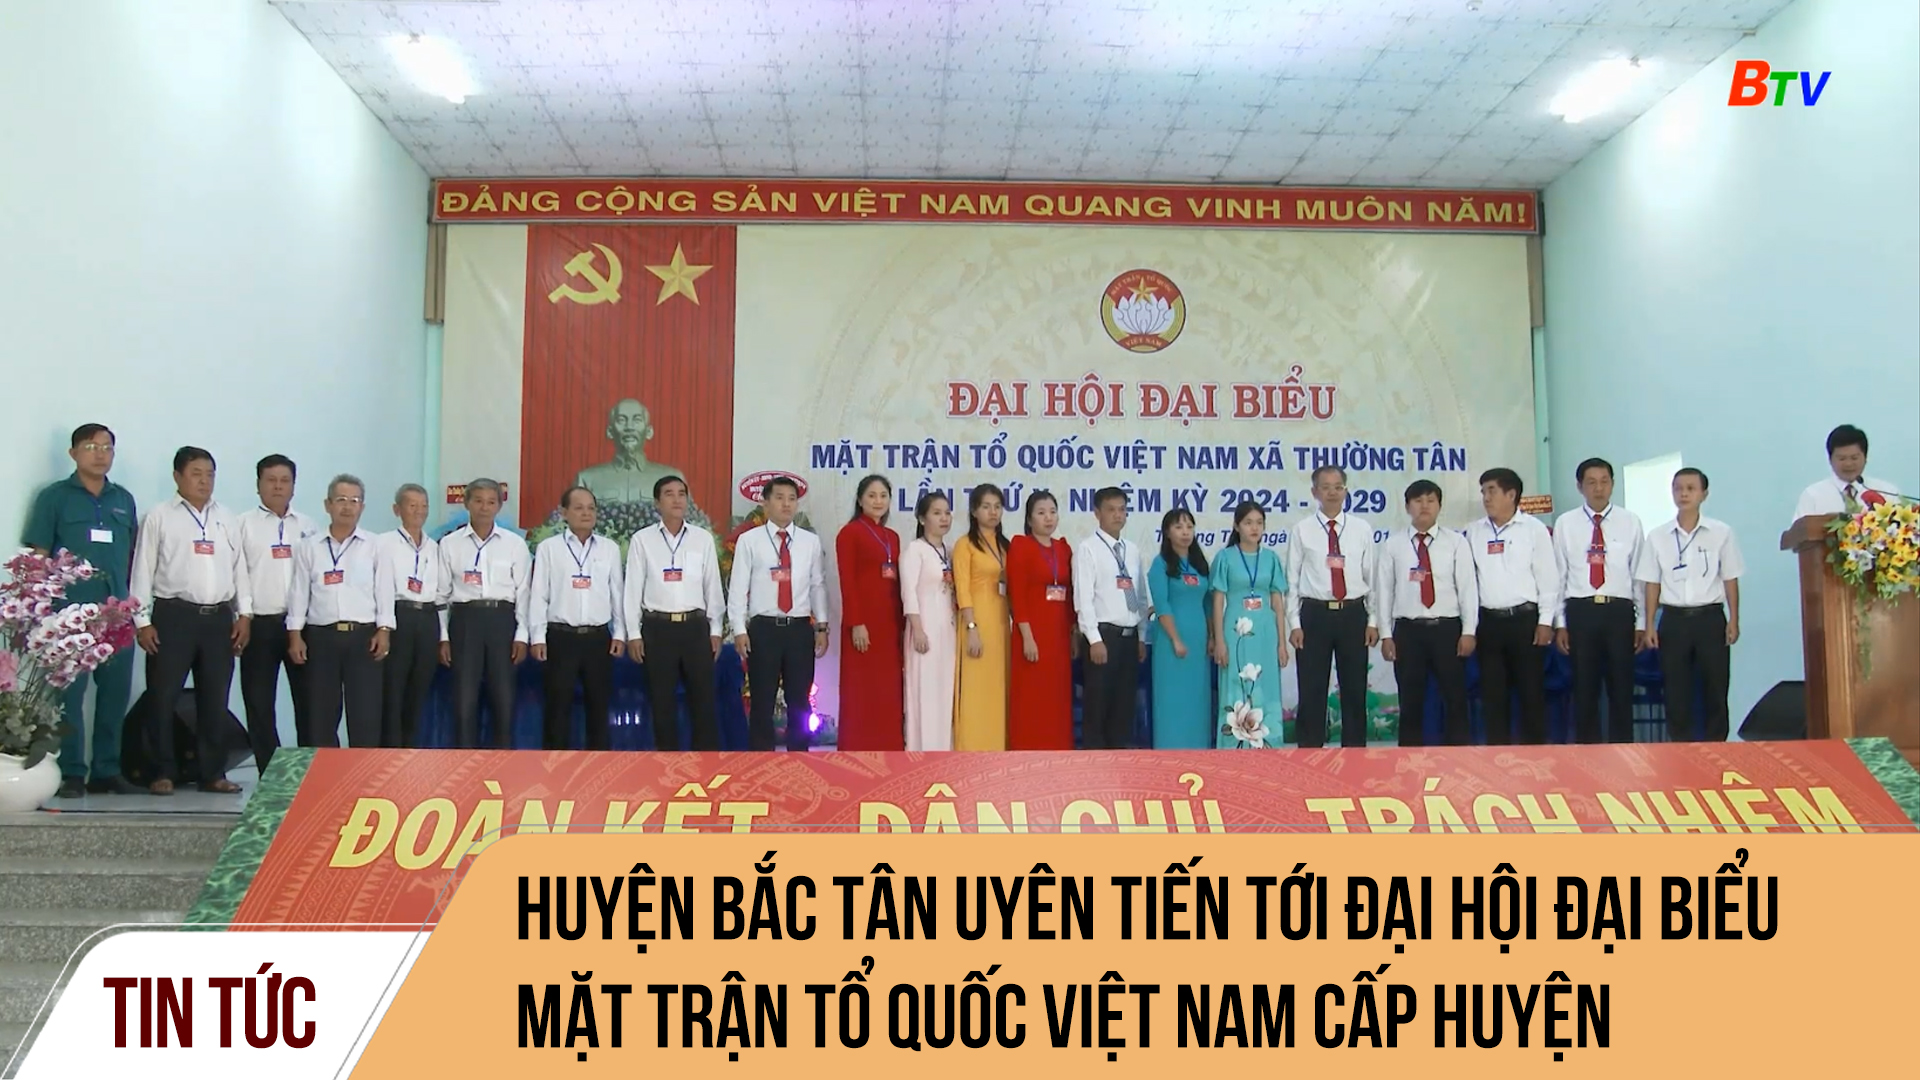 Huyện Bắc Tân Uyên tiến tới Đại hội Đại biểu Mặt trận Tổ quốc Việt Nam cấp huyện